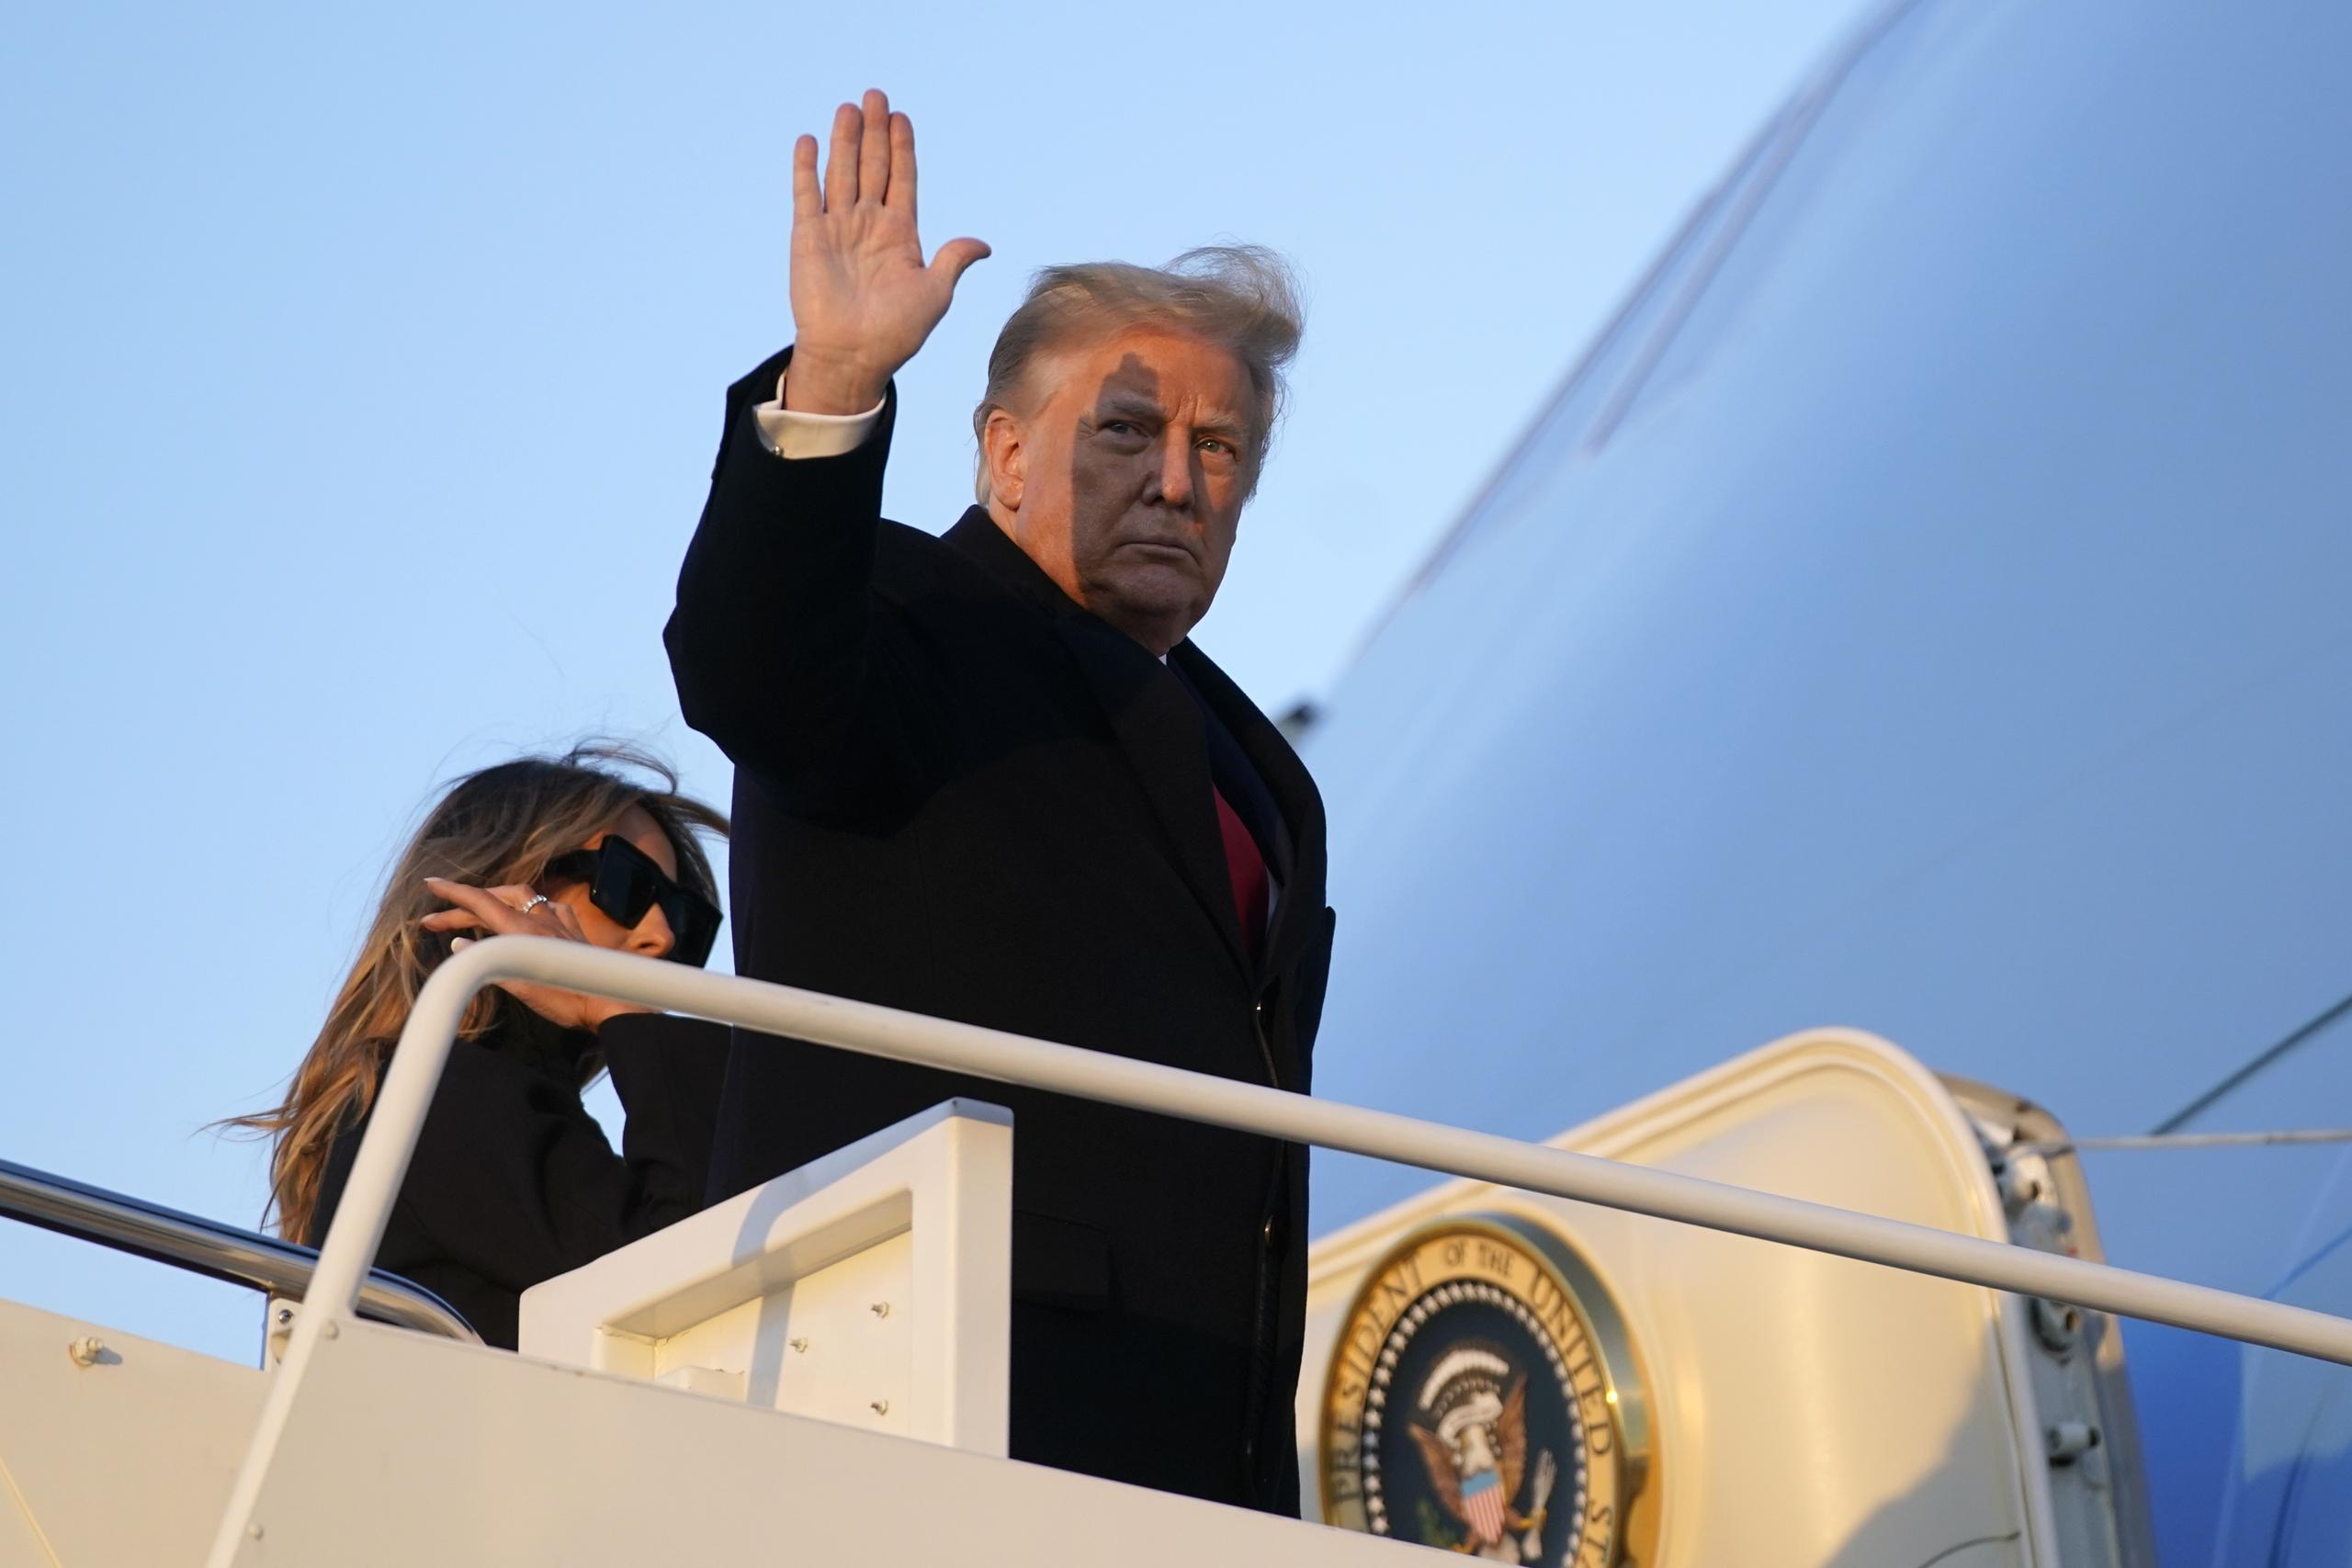 El presidente Donald Trump partió el 23 de diciembre a su casa vacacional en Mar-a-Lago, en Florida, a donde se le ha enviado el proyecto de ley por si decidiera firmarlo.